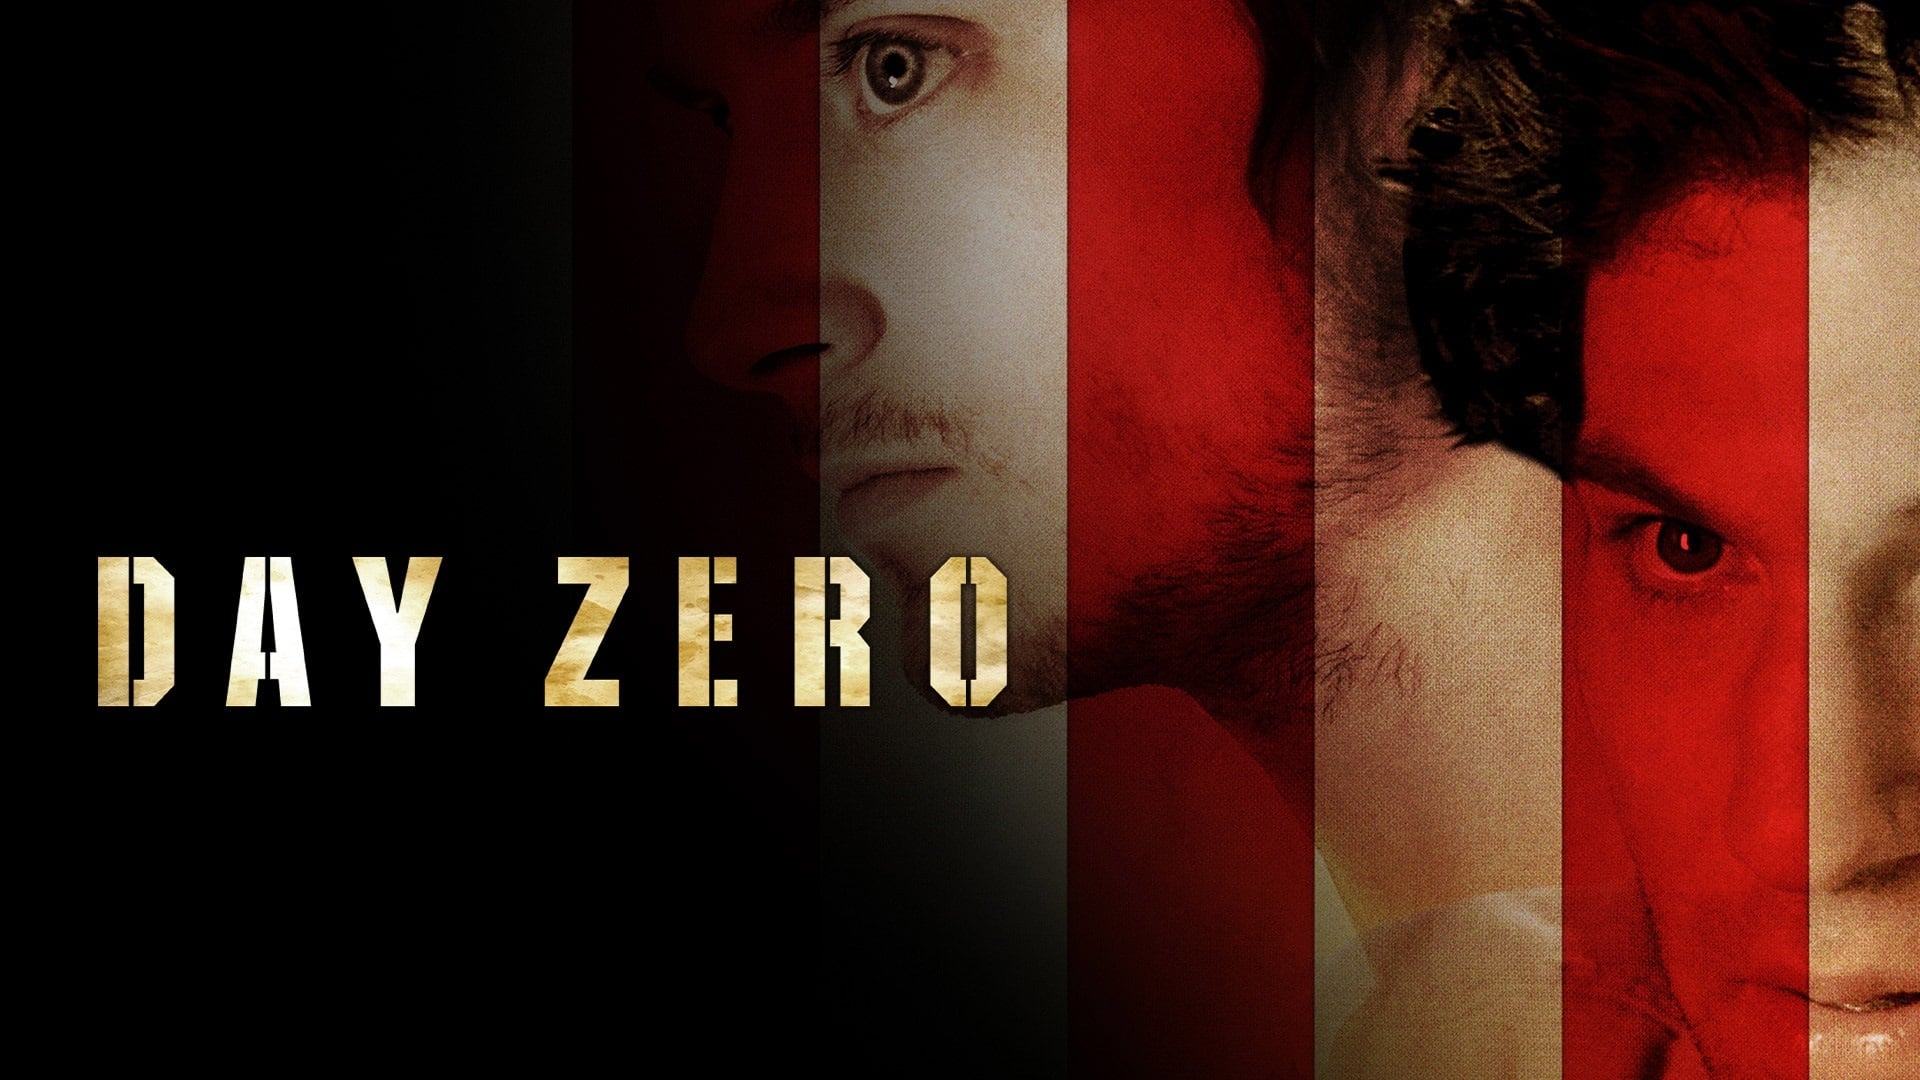 Day Zero (2007)